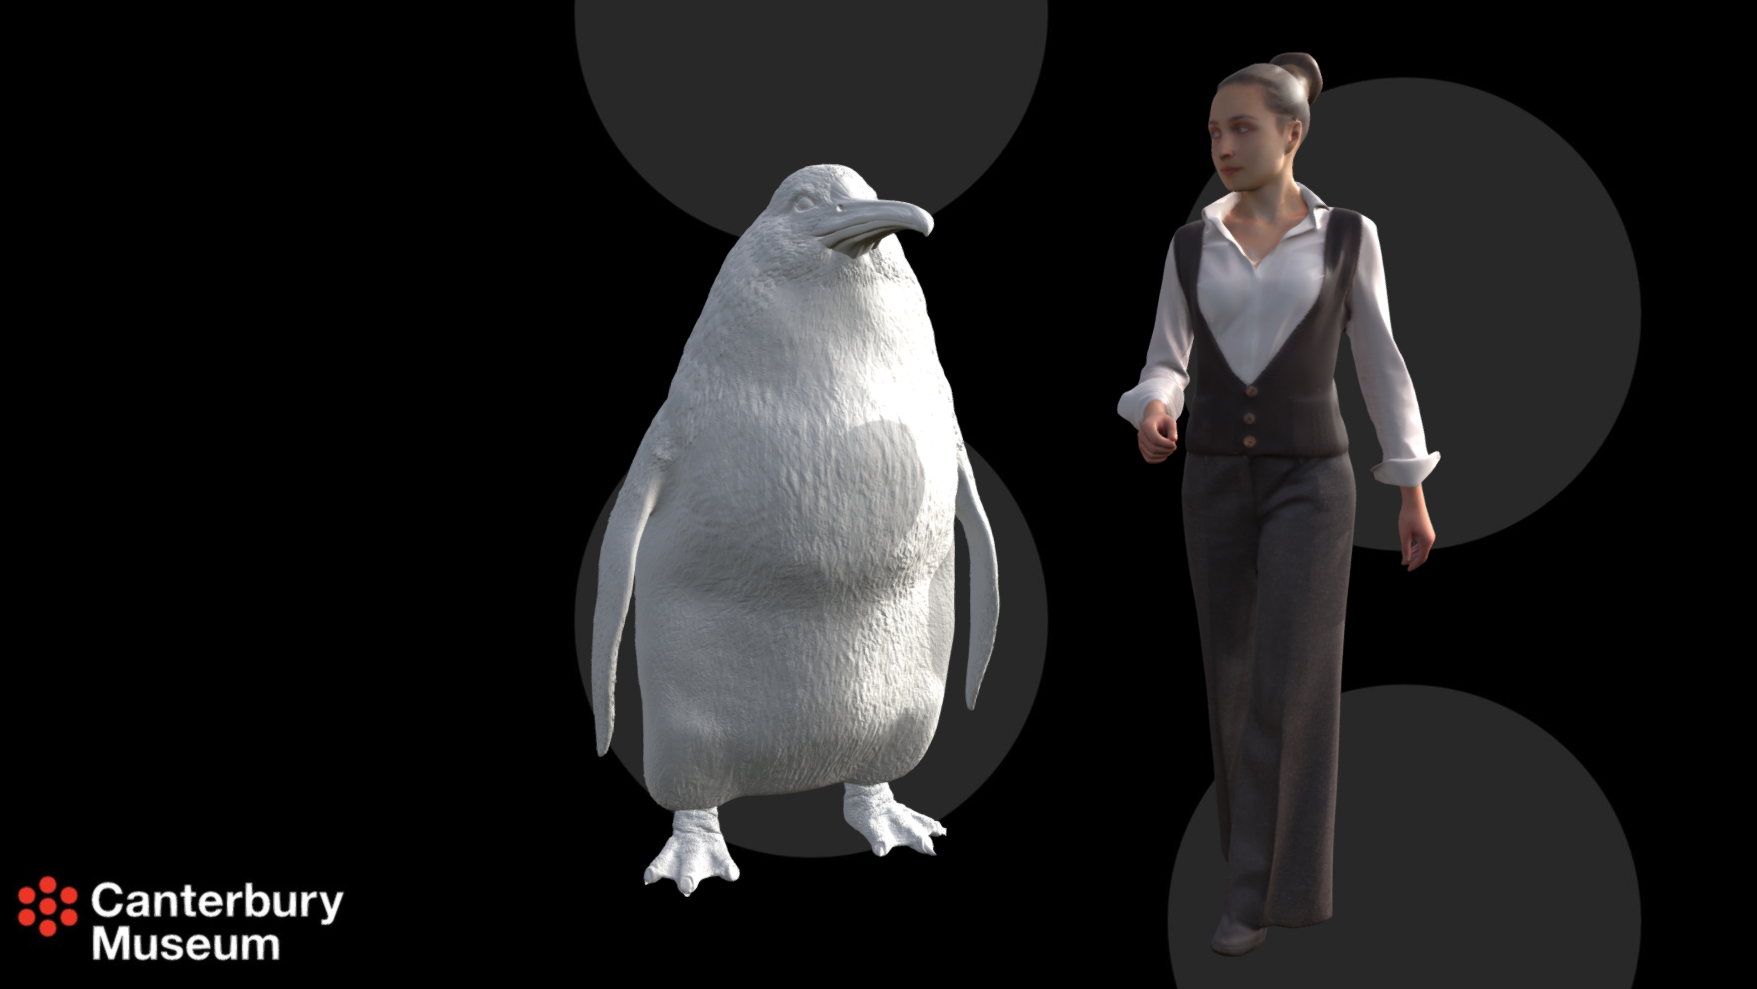 Imagem em 3D mostra um pinguim e uma mulher. O pinguim tem o dobro da largura da mulher e uma altura um pouco menor.